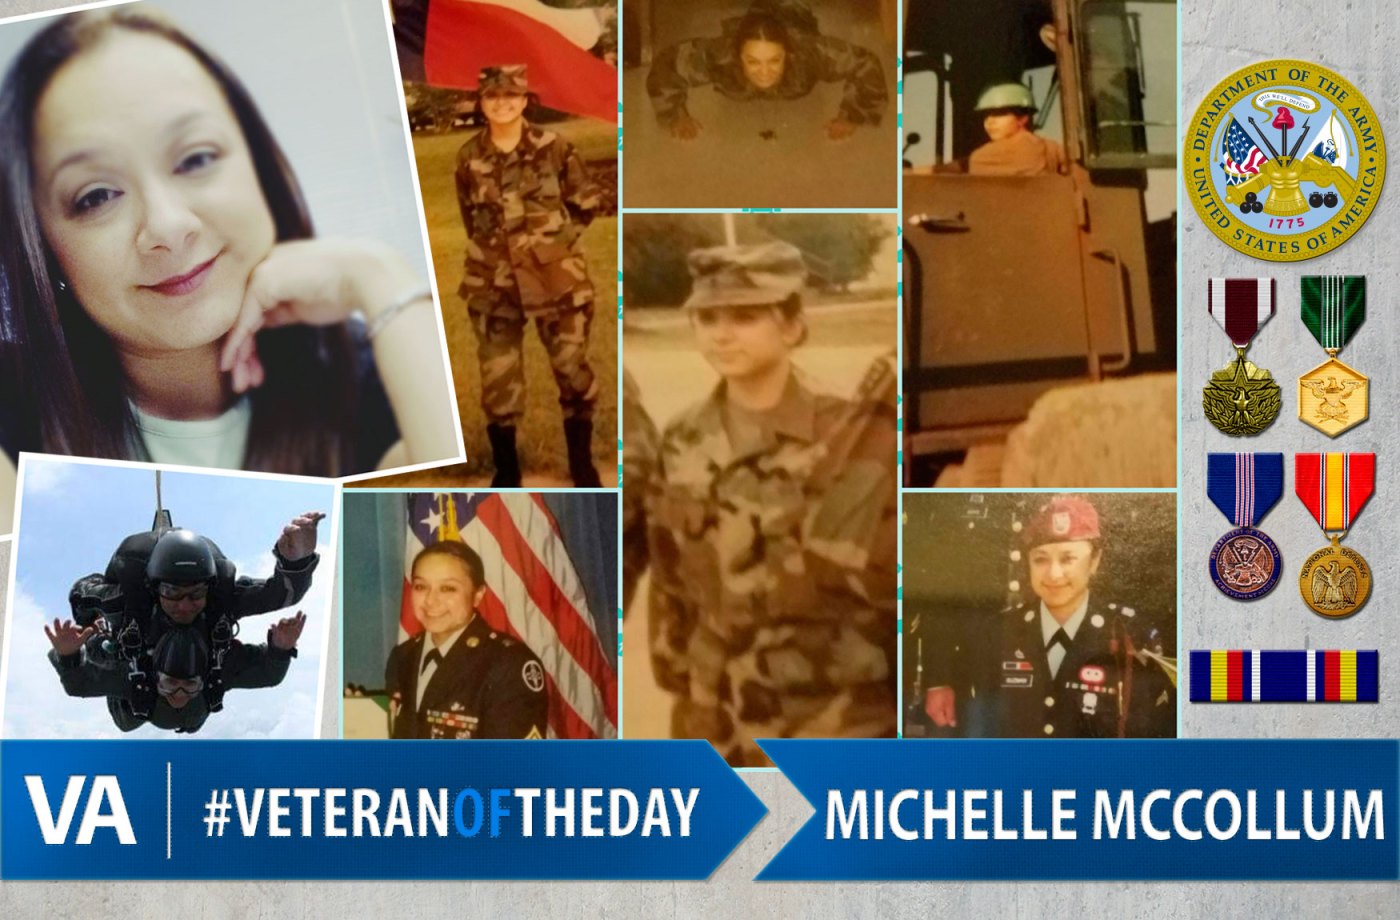 Veteran of the day Michelle McCollum